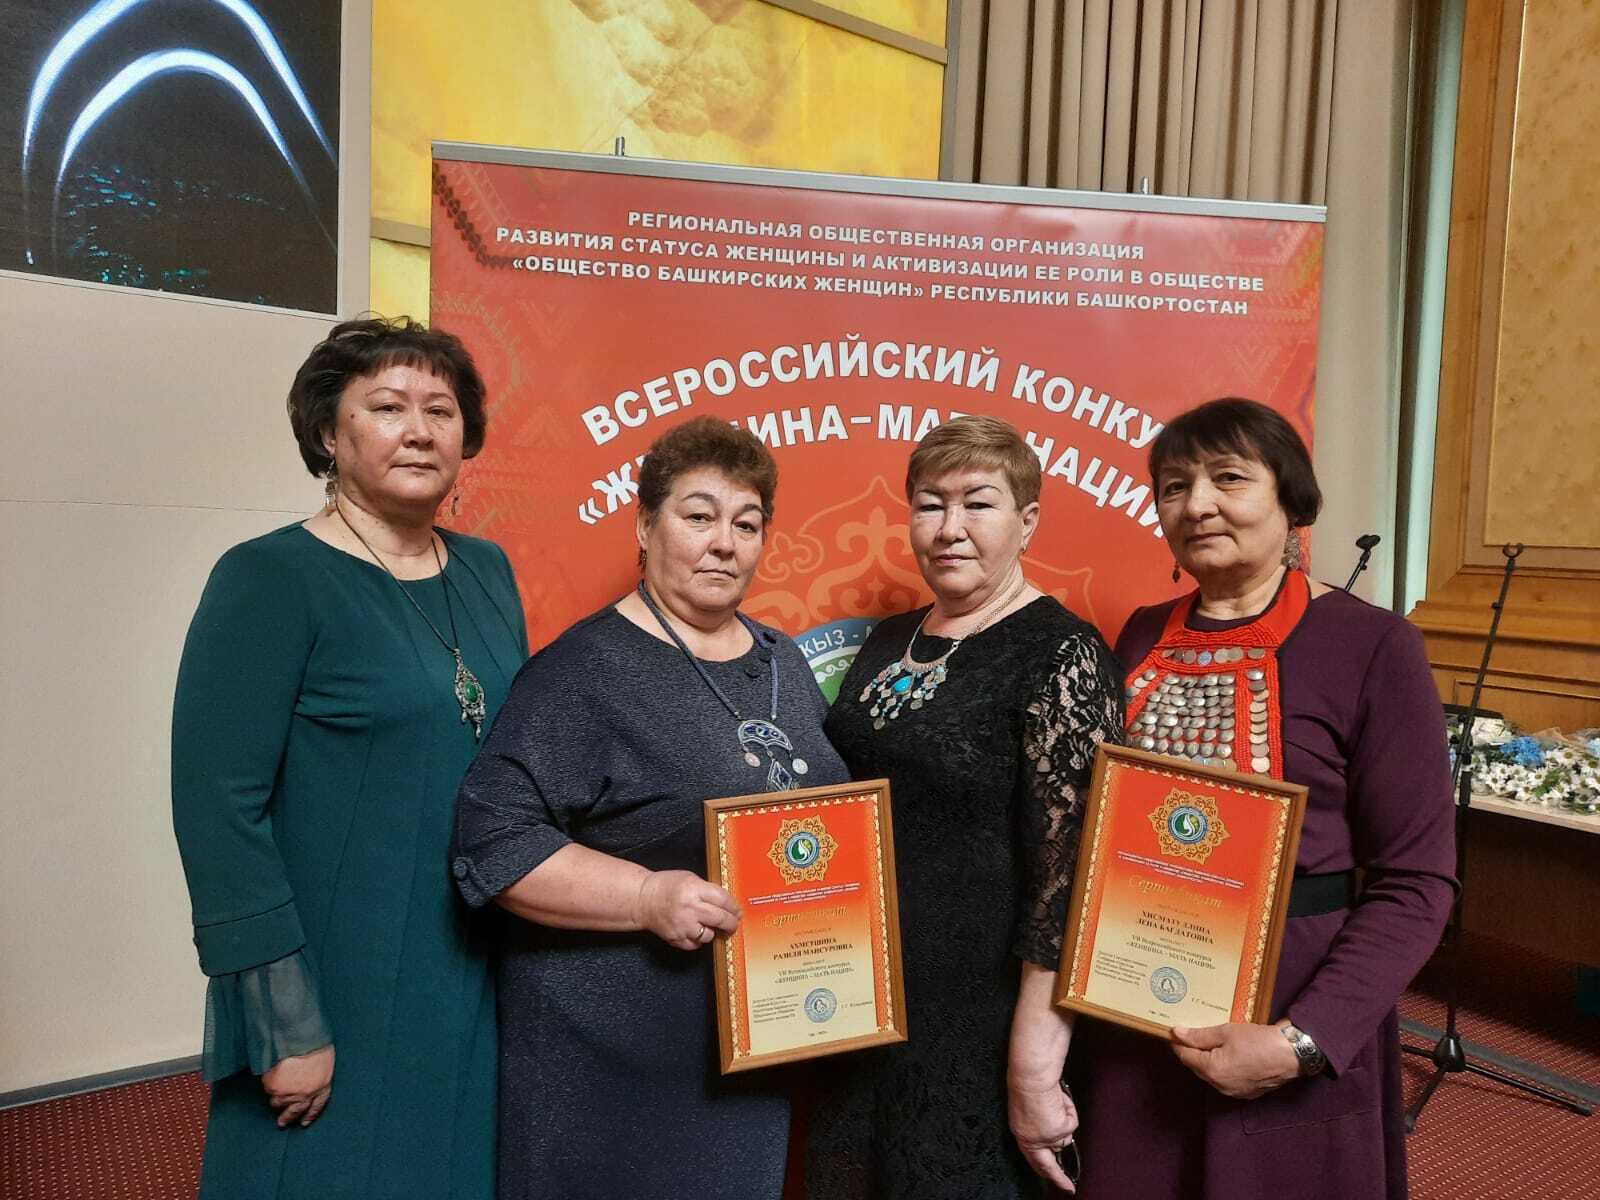 Чишминки удостоились медали Медали Общества башкирских женщин РБ имени Рабиги Кушаевой “Женщина – мать нации»